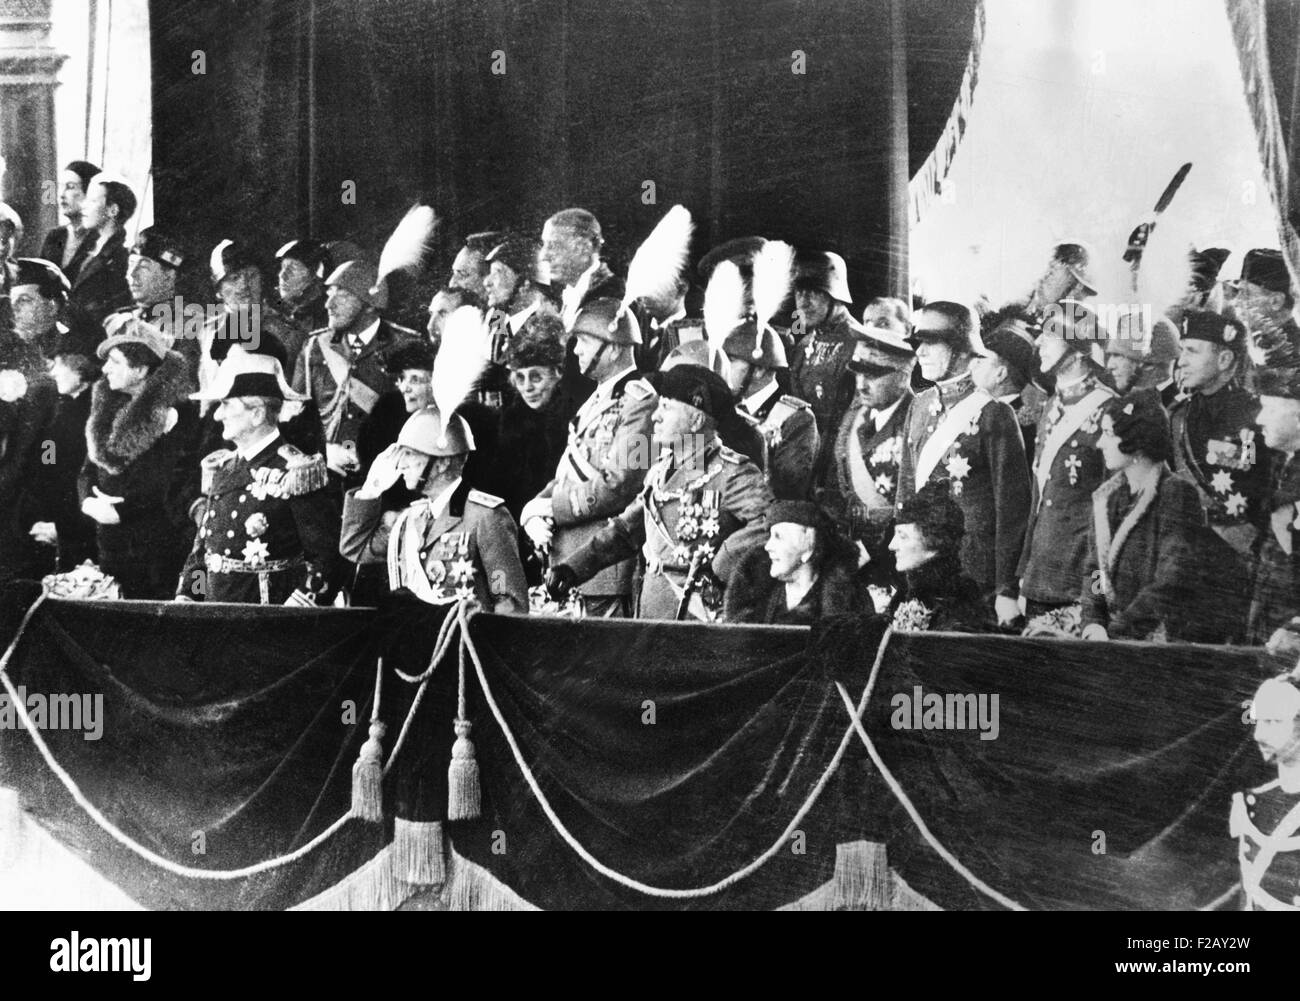 25 000 soldats italiens parade pour l'amiral Horthy. Le 3 décembre 1936. Stand de révision, la L-R : L'amiral Horthy, en uniforme de la marine ; le roi Victor Emmanuel (saluant) ; Marshall Pietro Badoglio ; Premier ministre ; Mme Mussolini. Horthy Marie ; et la reine d'Italie. CSU (2015  9 902) Banque D'Images